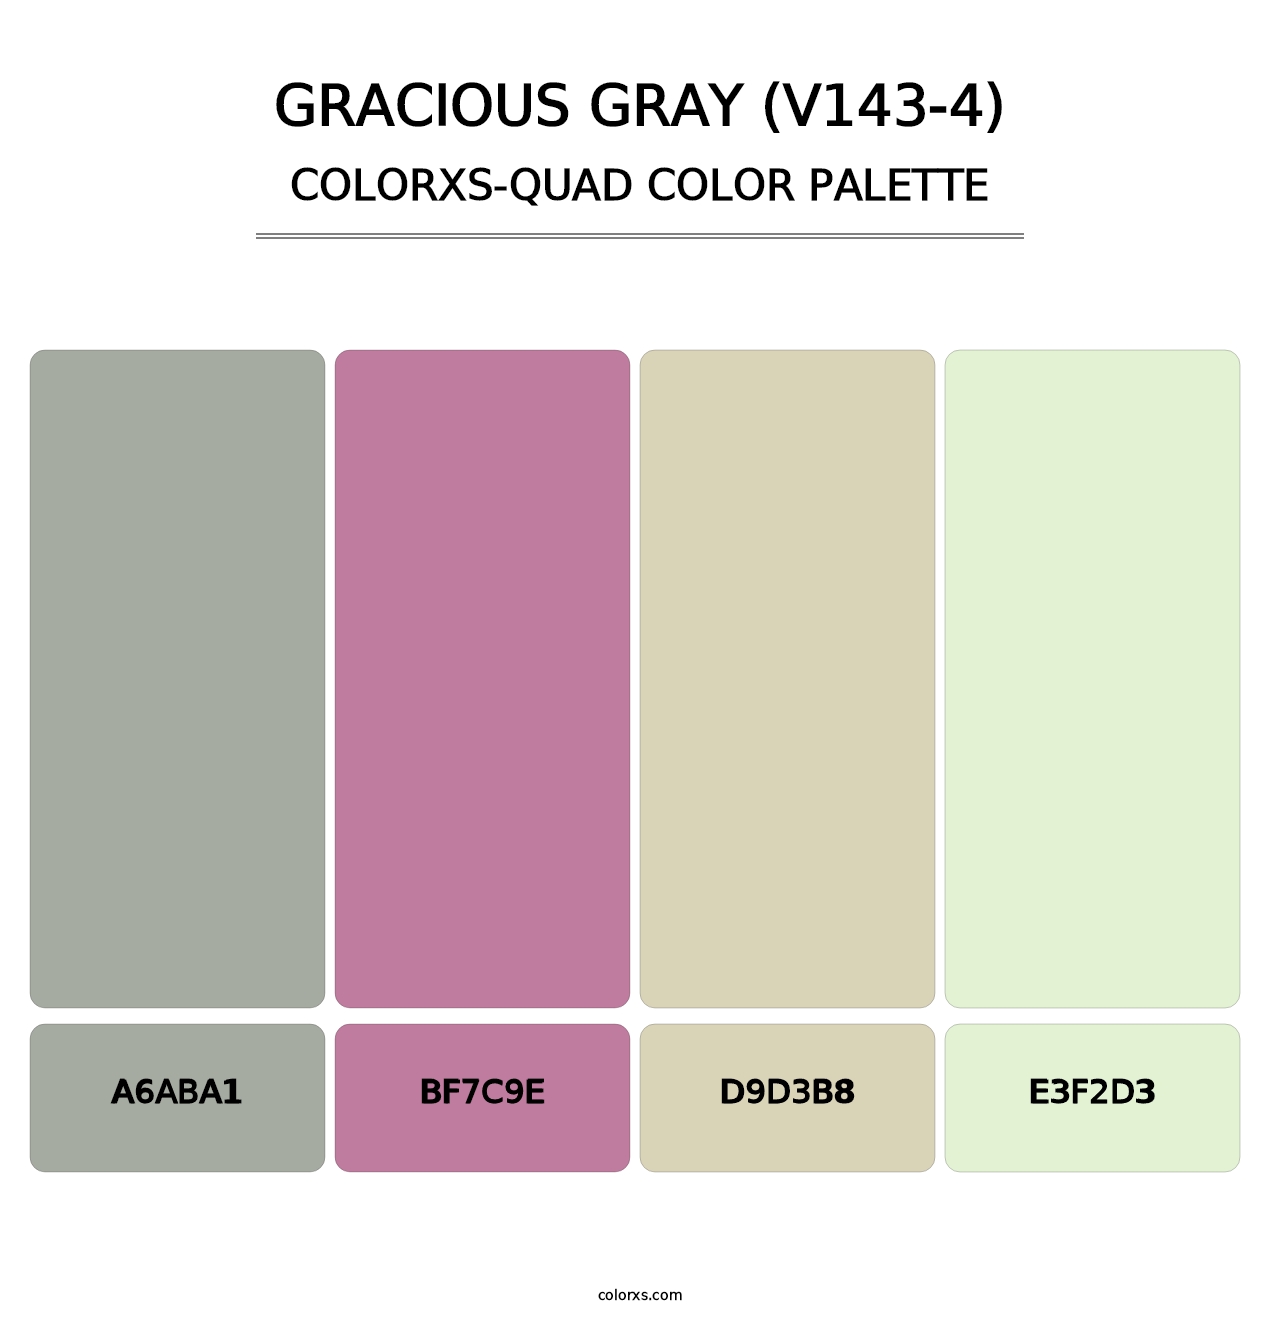 Gracious Gray (V143-4) - Colorxs Quad Palette